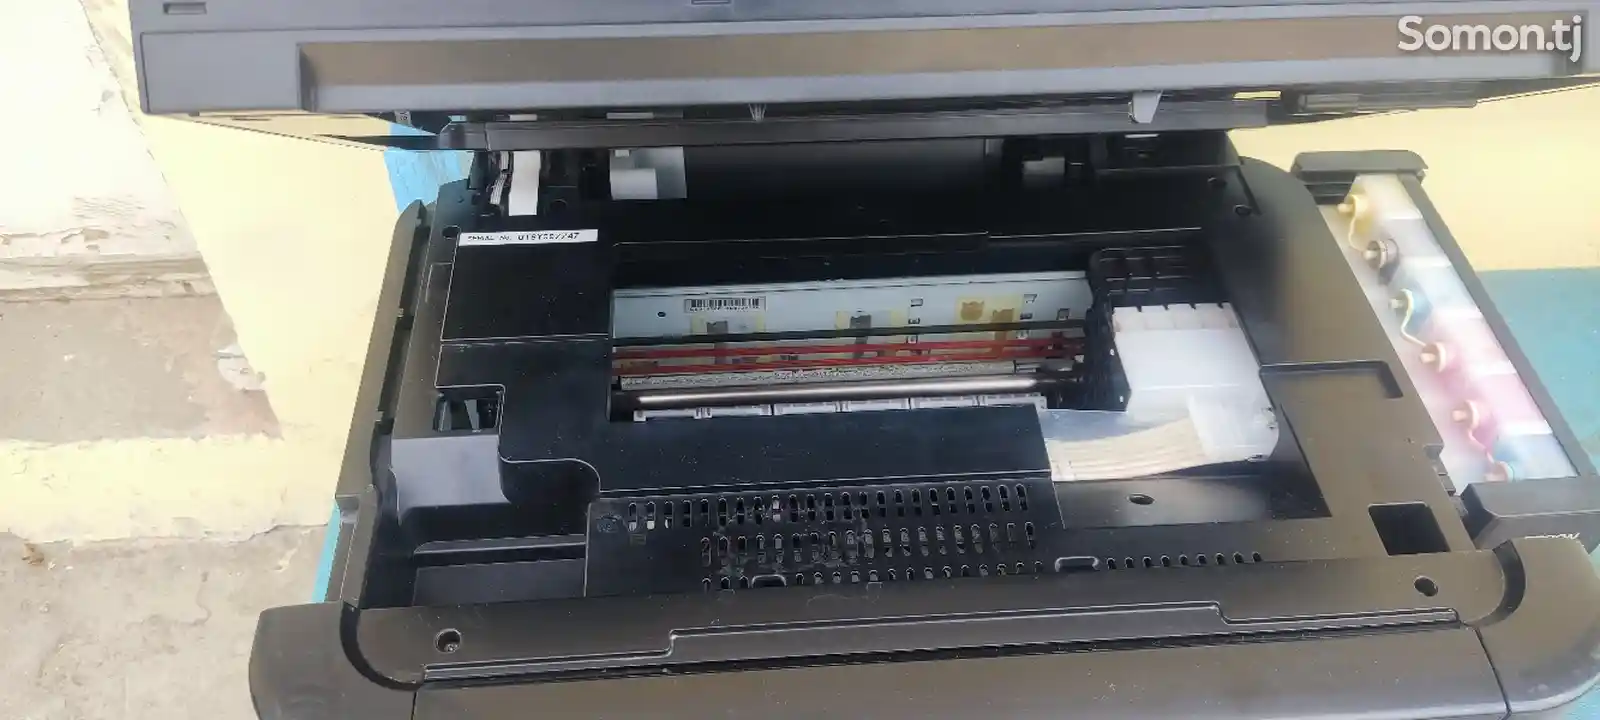 Принтер epson l850 3 в1-5